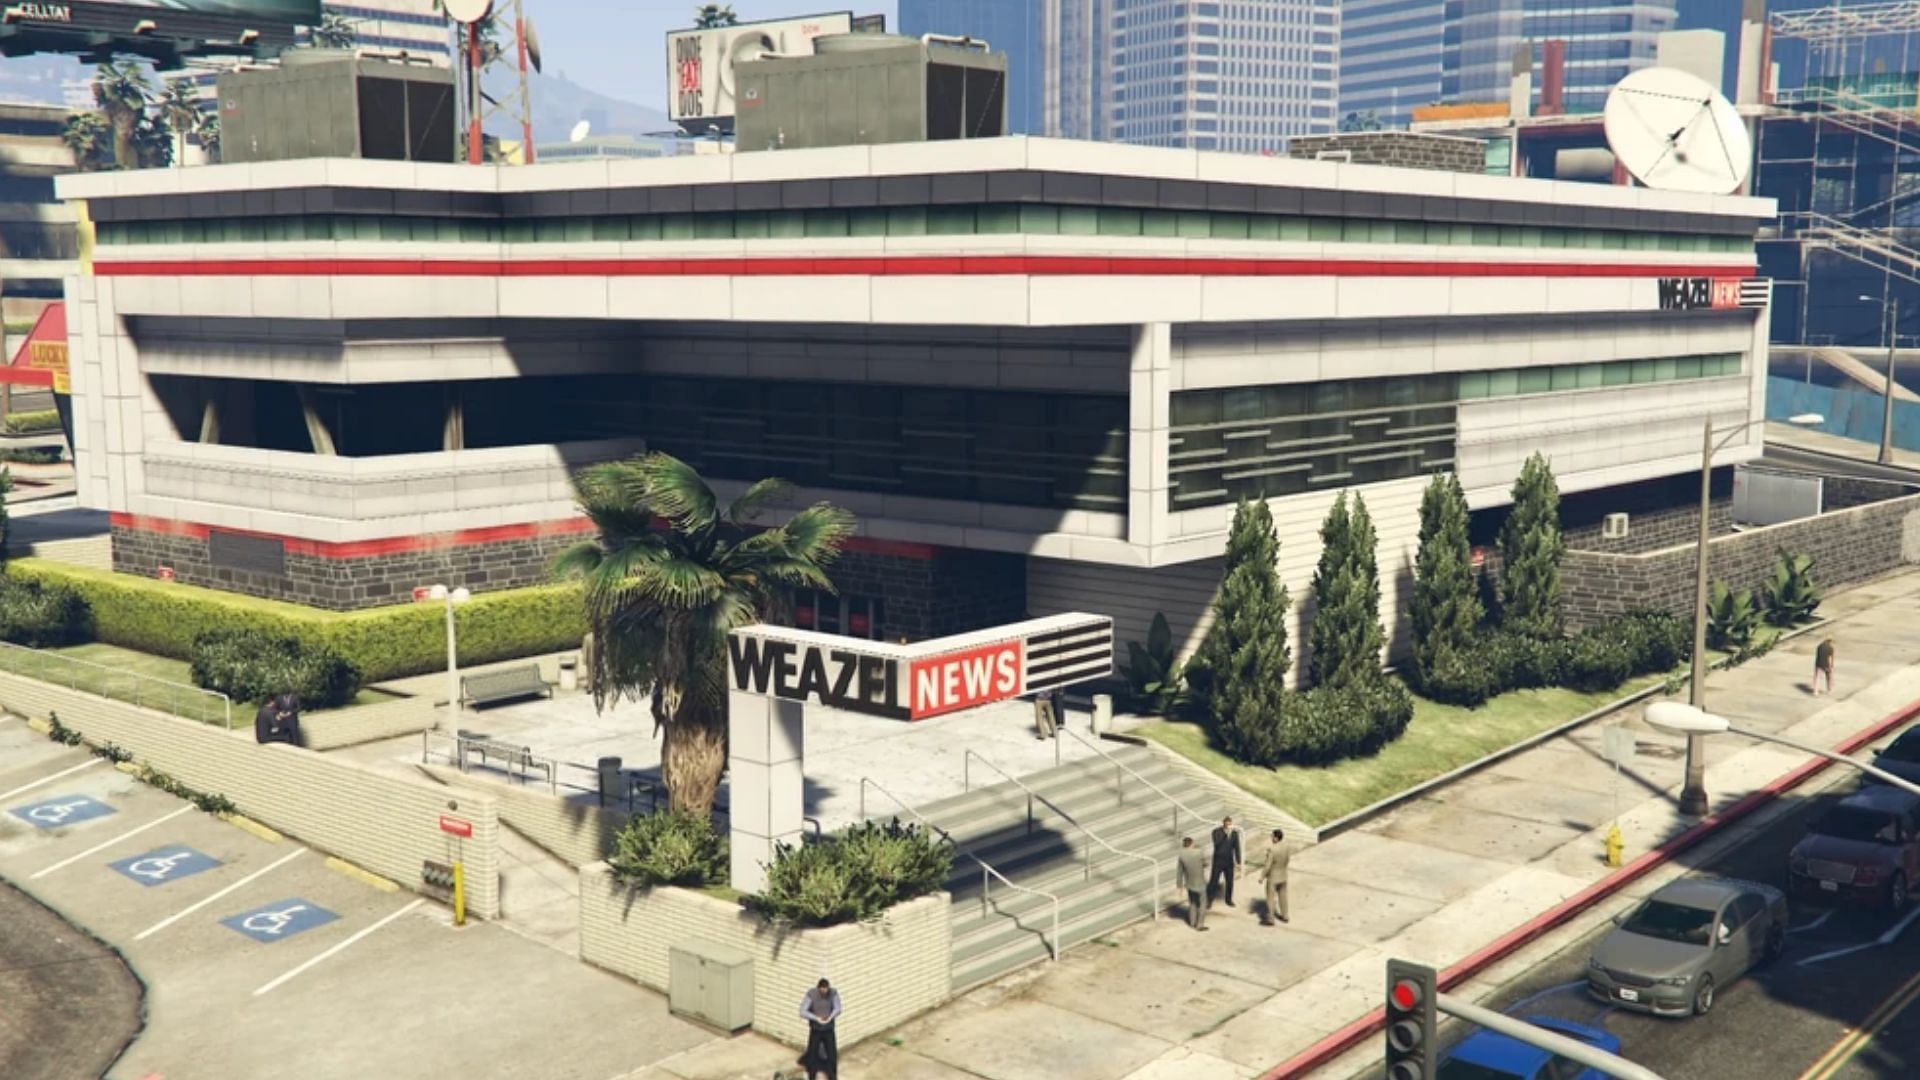 The Weazel News building in Los Santos (Image via GTA Wiki)